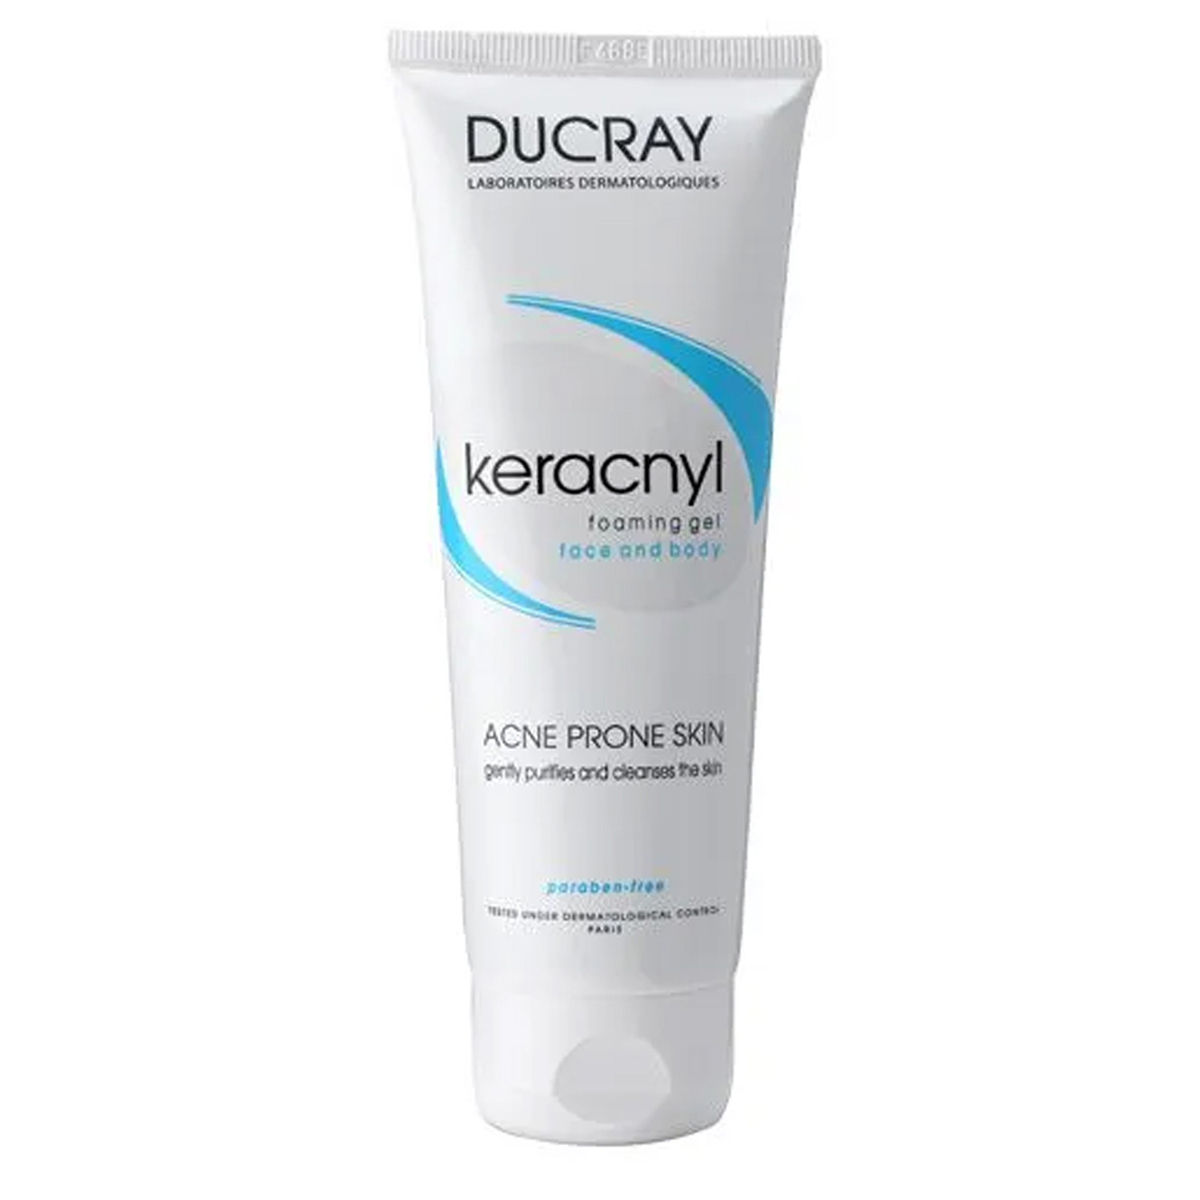 Buy Ducray Keracnyl Face & Body Foaming Gel, 100 ml Online